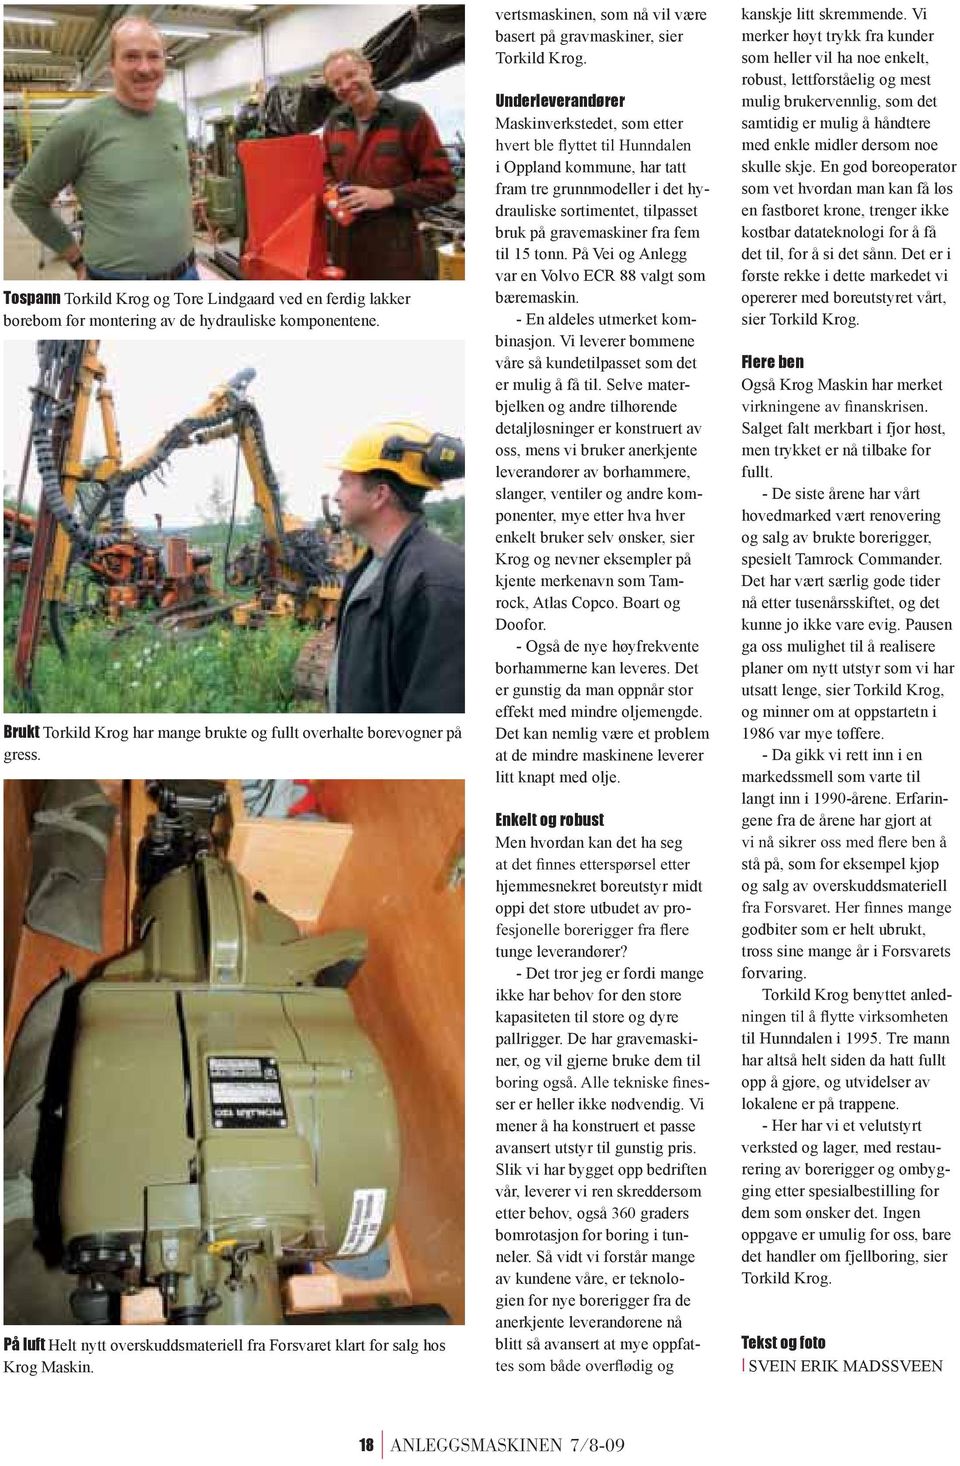 Underleverandører Maskinverkstedet, som etter i Oppland kommune, har tatt fram tre grunnmodeller i det hydrauliske sortimentet, tilpasset bruk på gravemaskiner fra fem til 15 tonn.